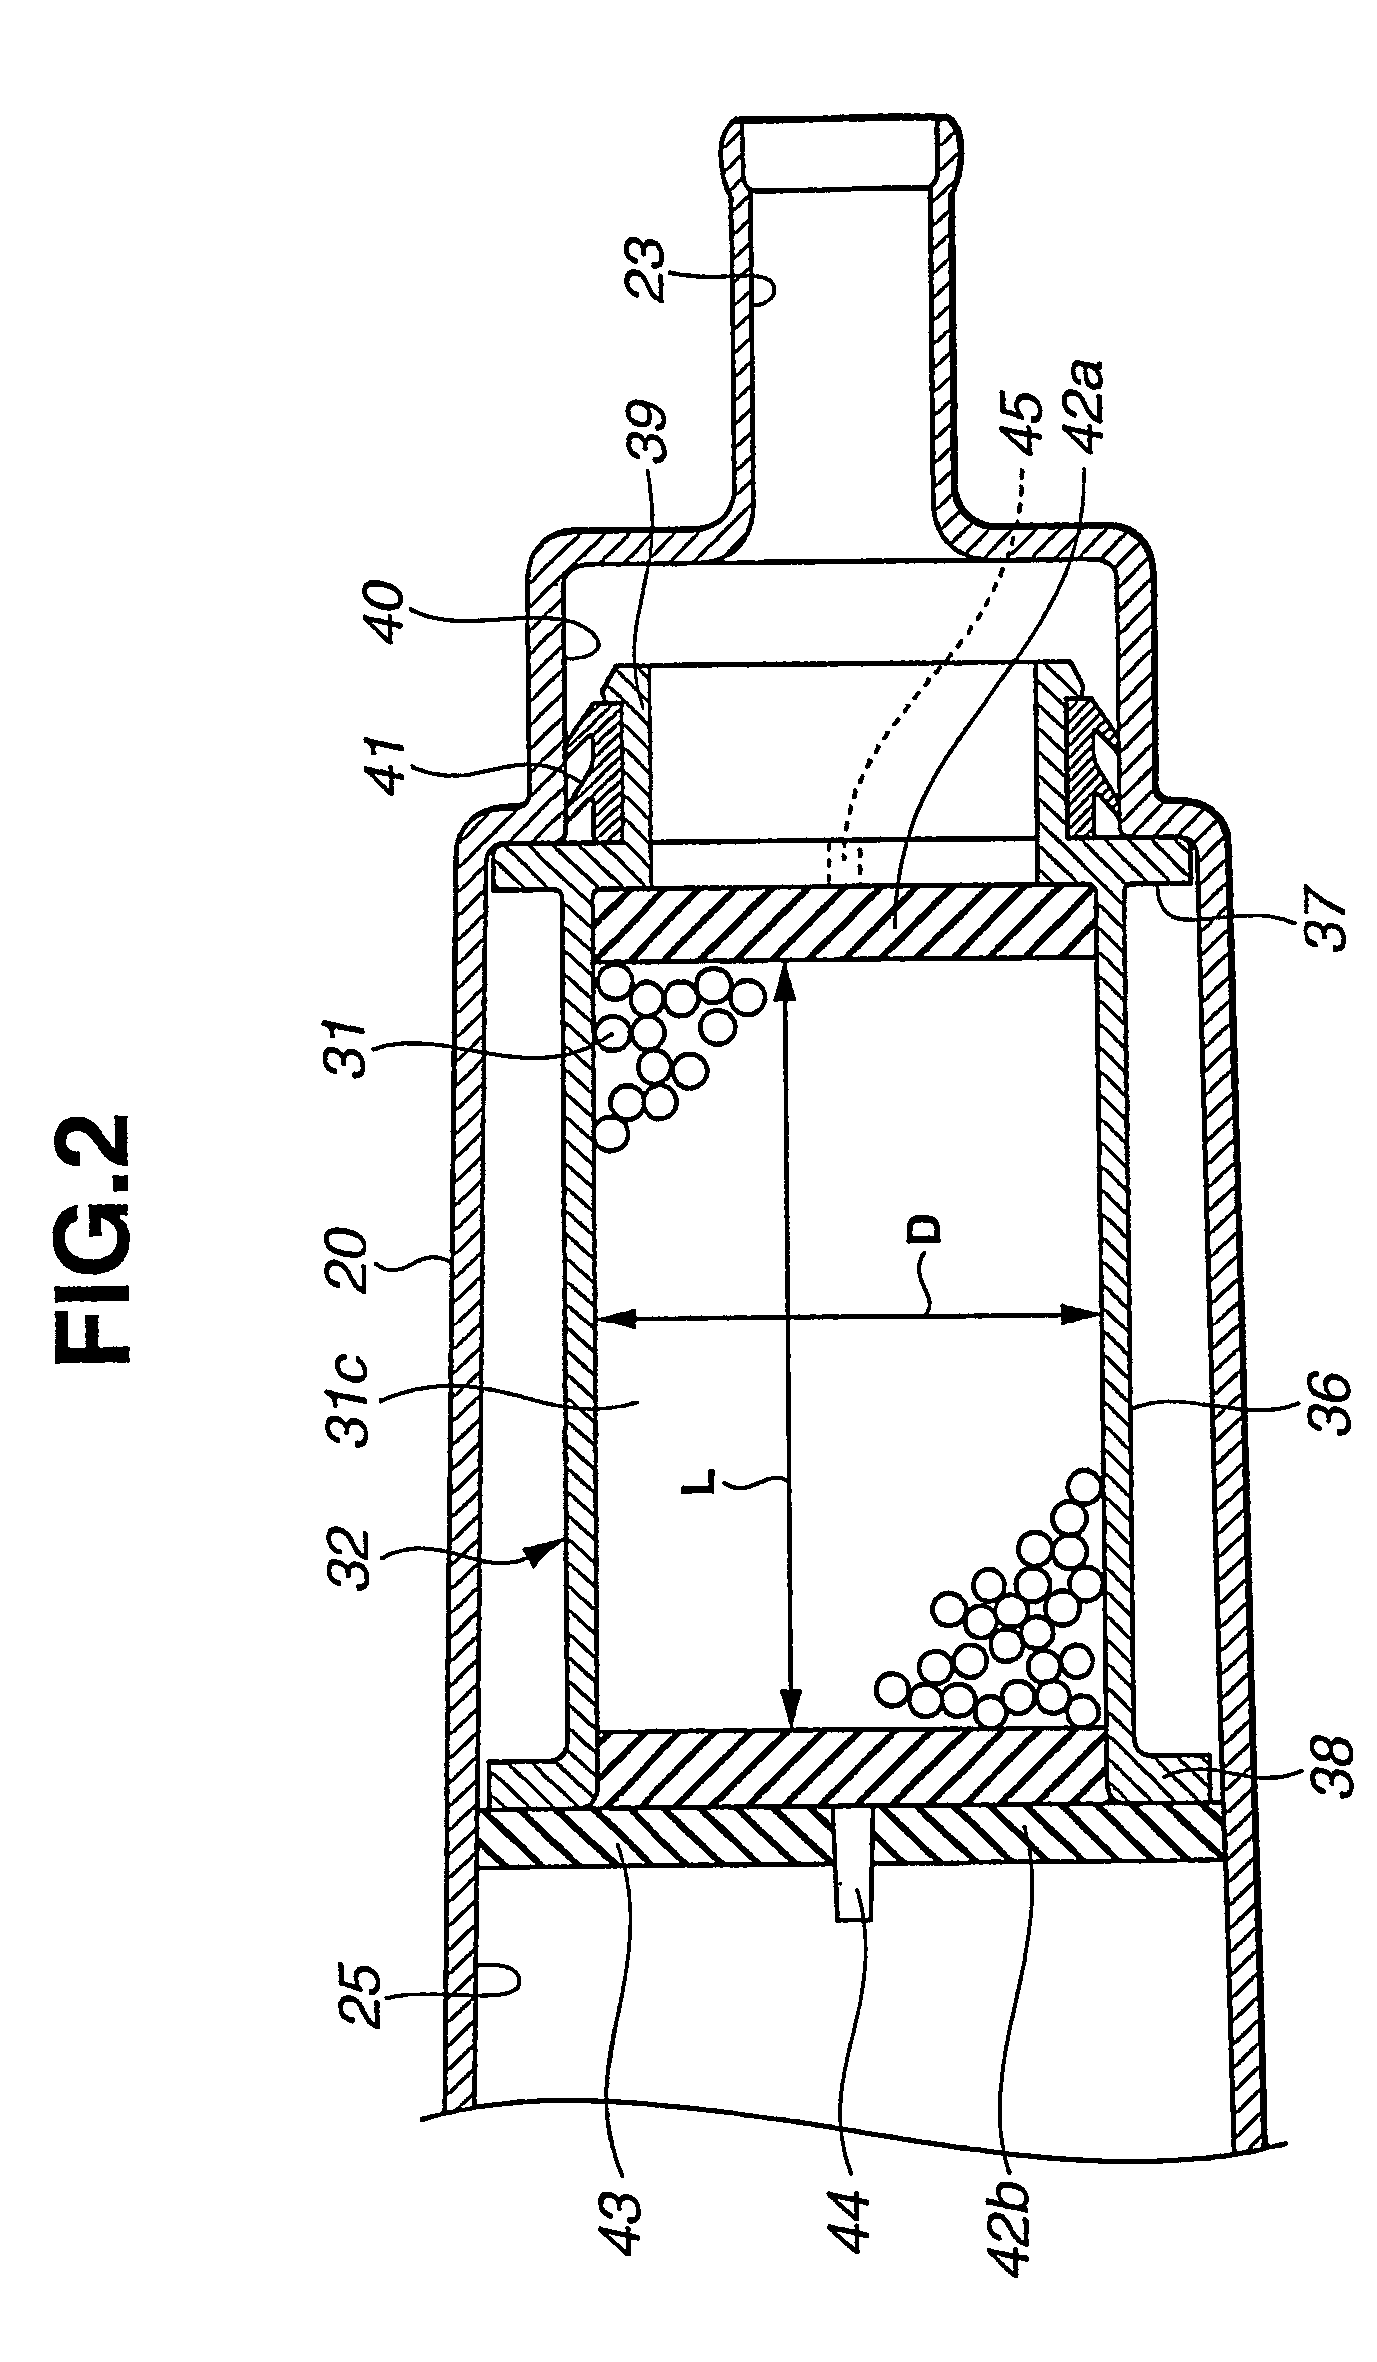 Fuel vapor treatment device